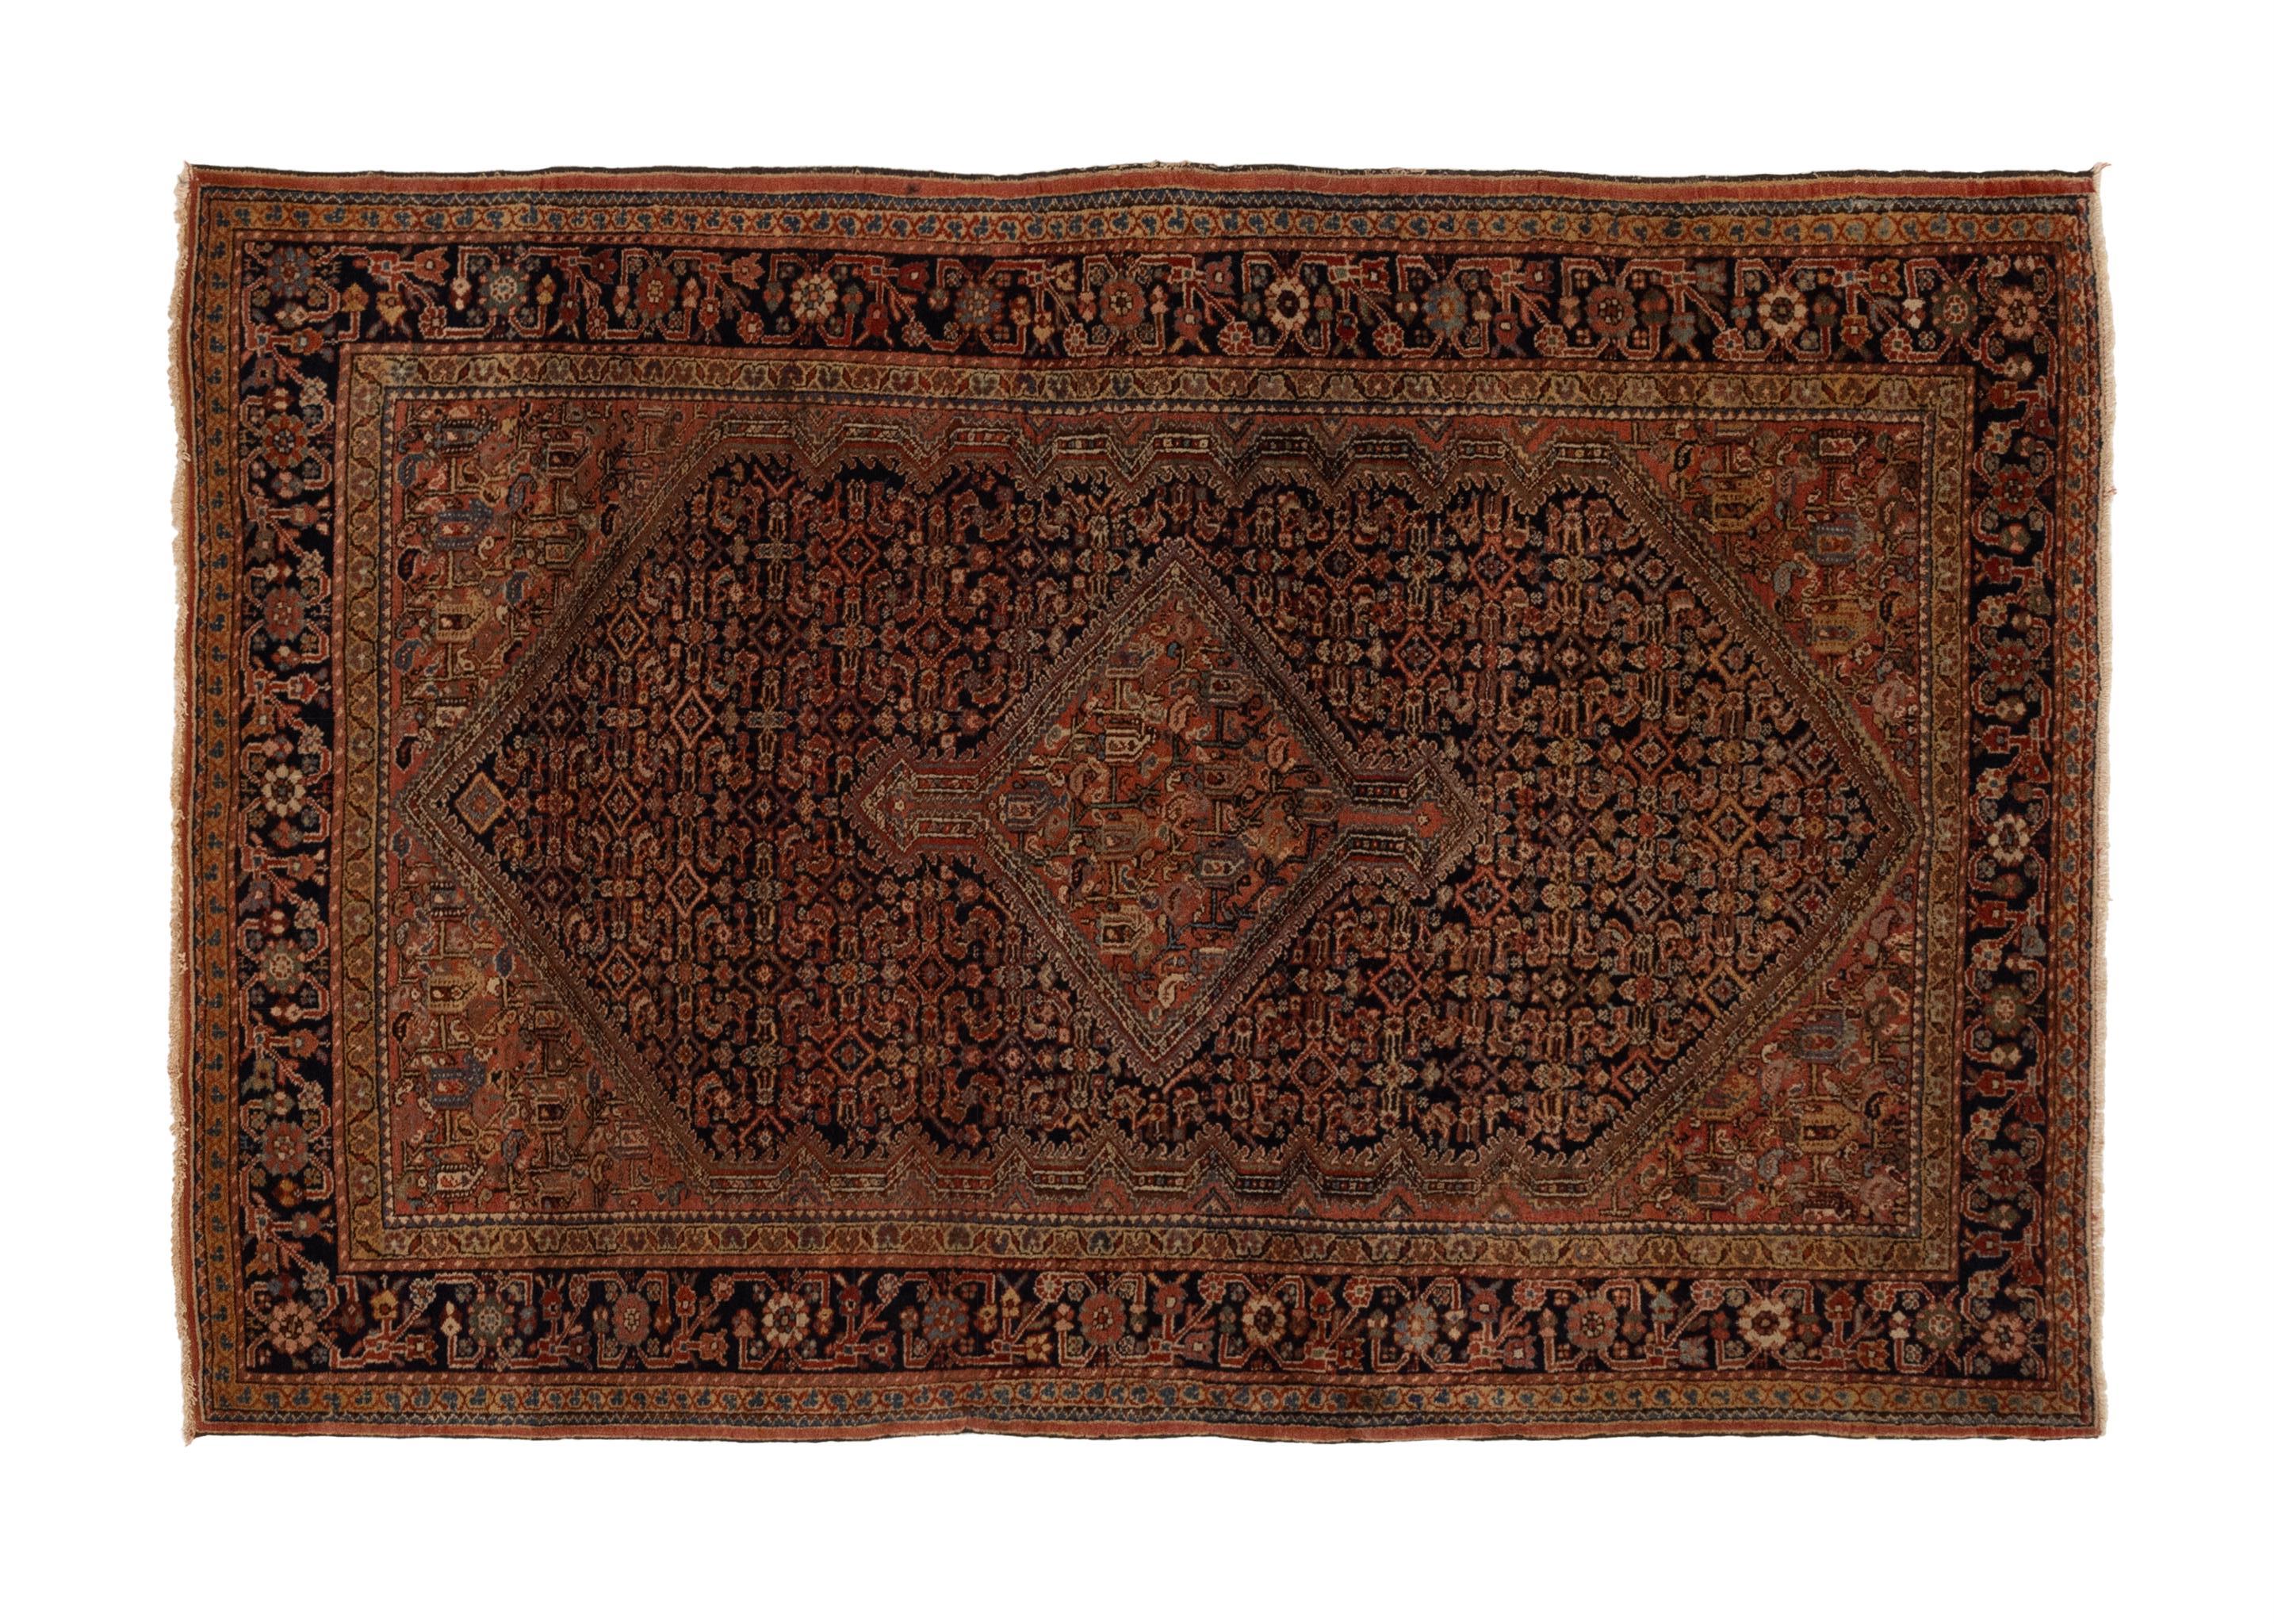 Dieser exquisite antike, traditionelle Teppich ist ein wahres Zeugnis für die zeitlose Schönheit und Handwerkskunst der Vergangenheit. Er ist mit viel Liebe zum Detail handgewebt und besticht durch sein zentrales Medaillonmuster, das ein